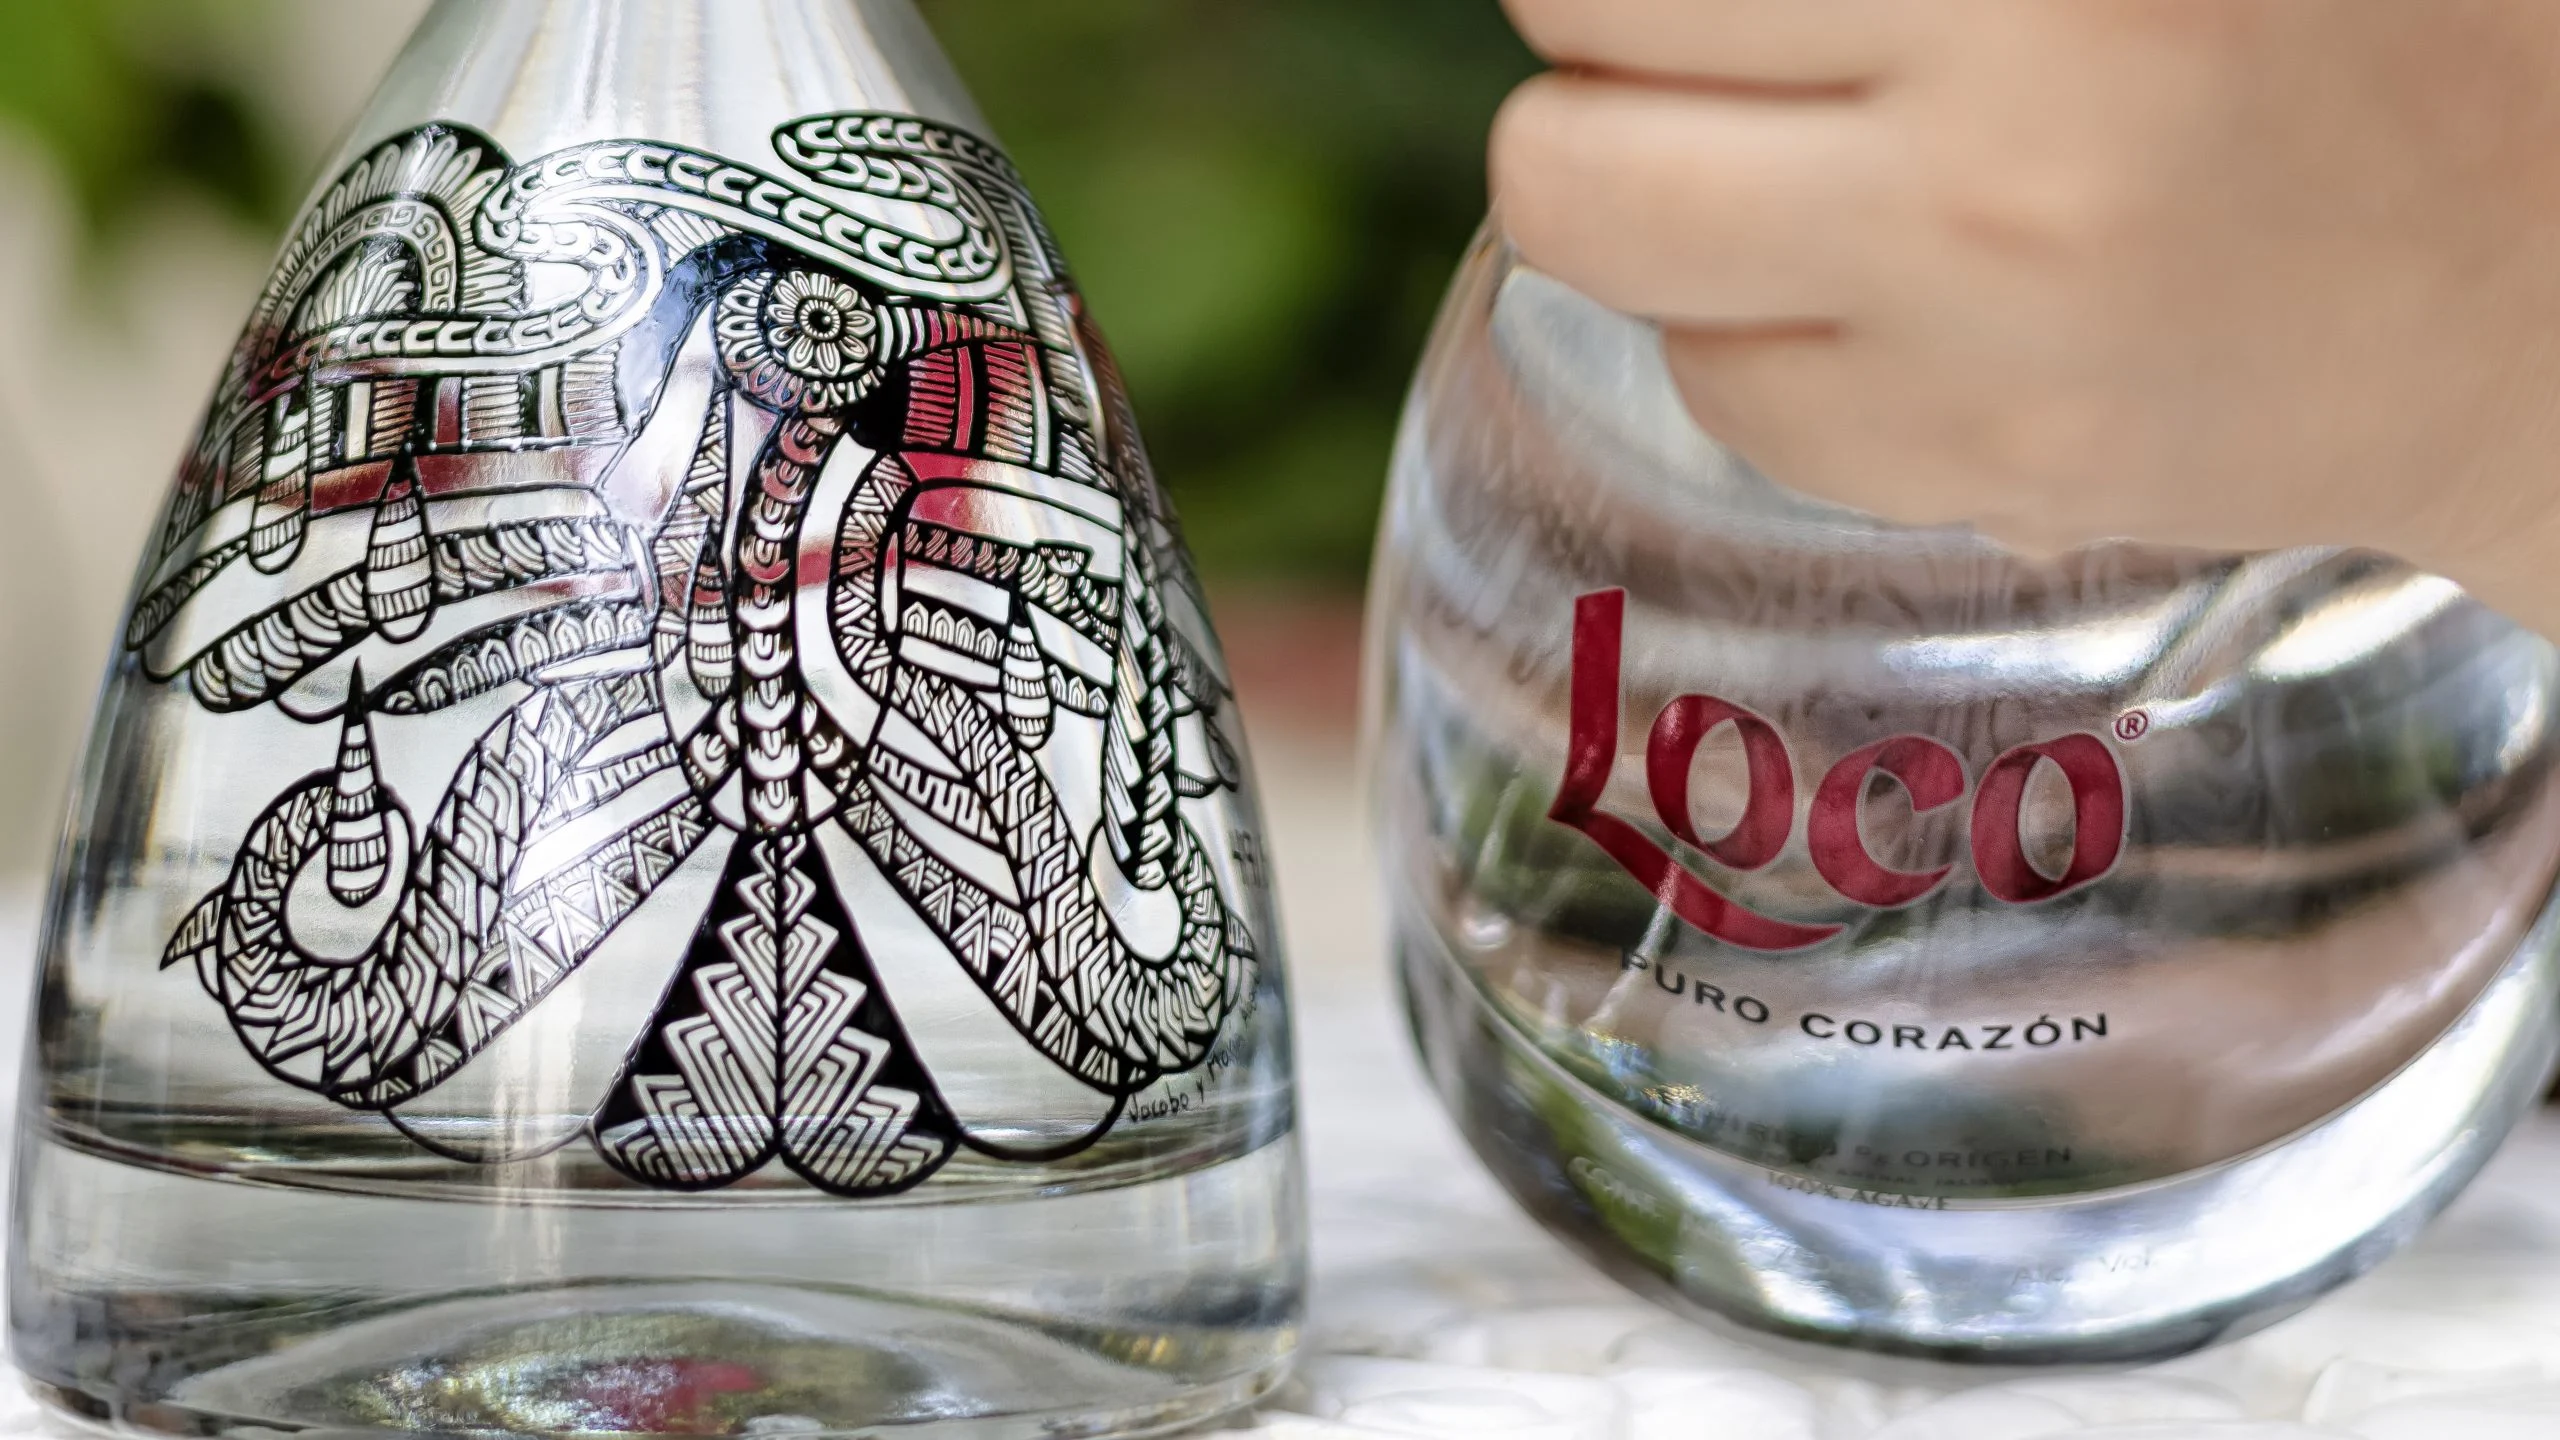 Loco Tequila lanza una botella en colaboración con Jacobo y María Ángeles